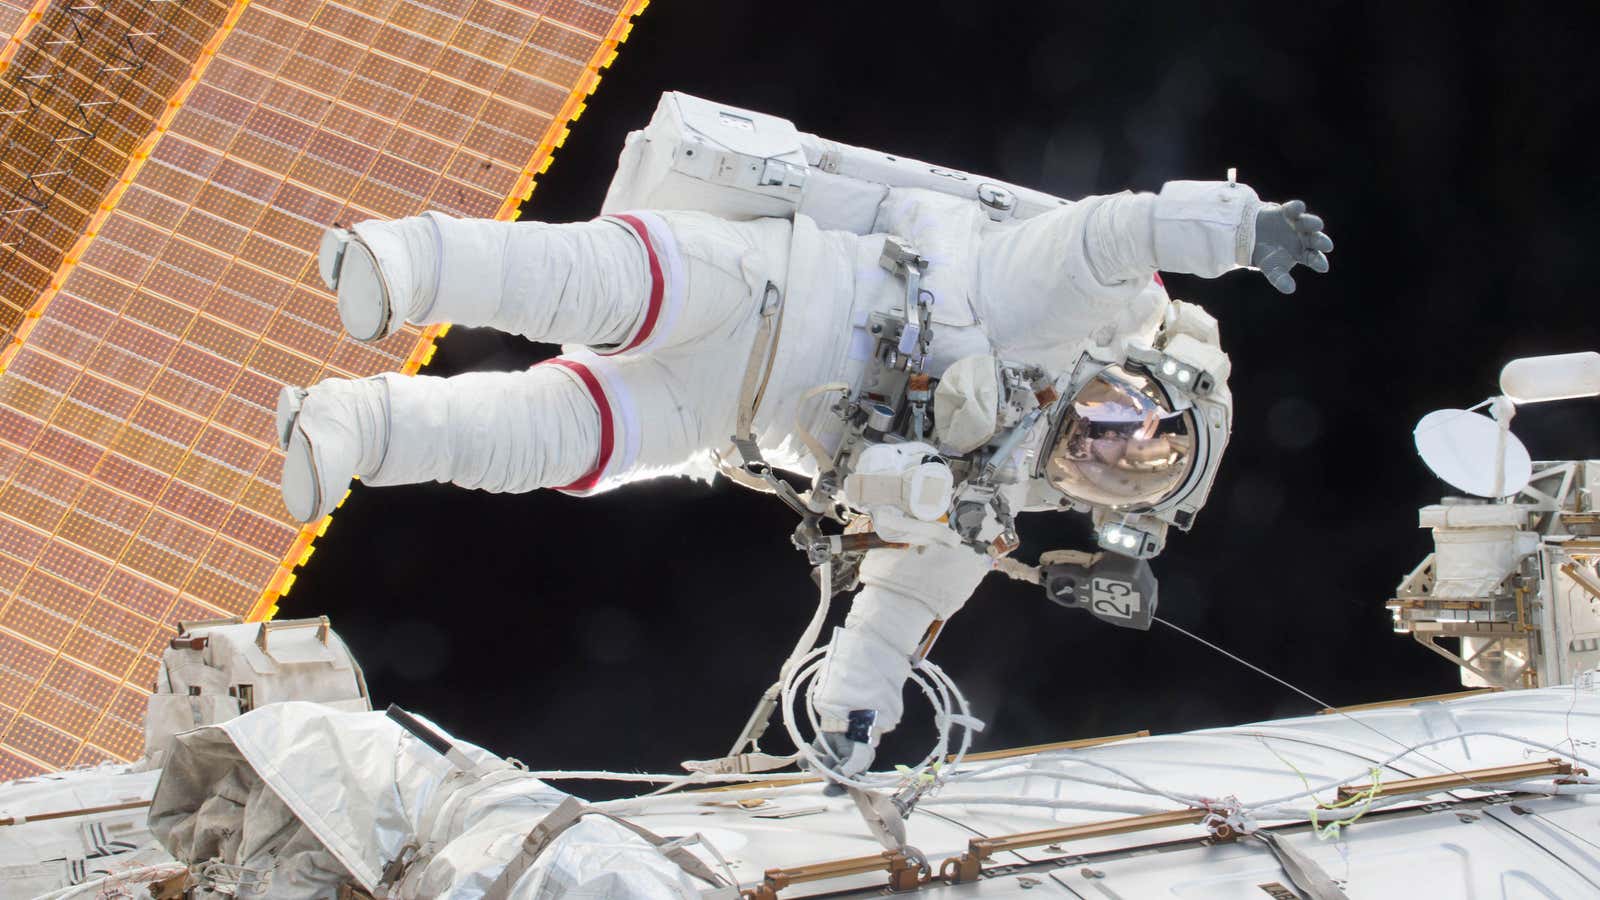 Scott Kelly goes on a spacewalk.